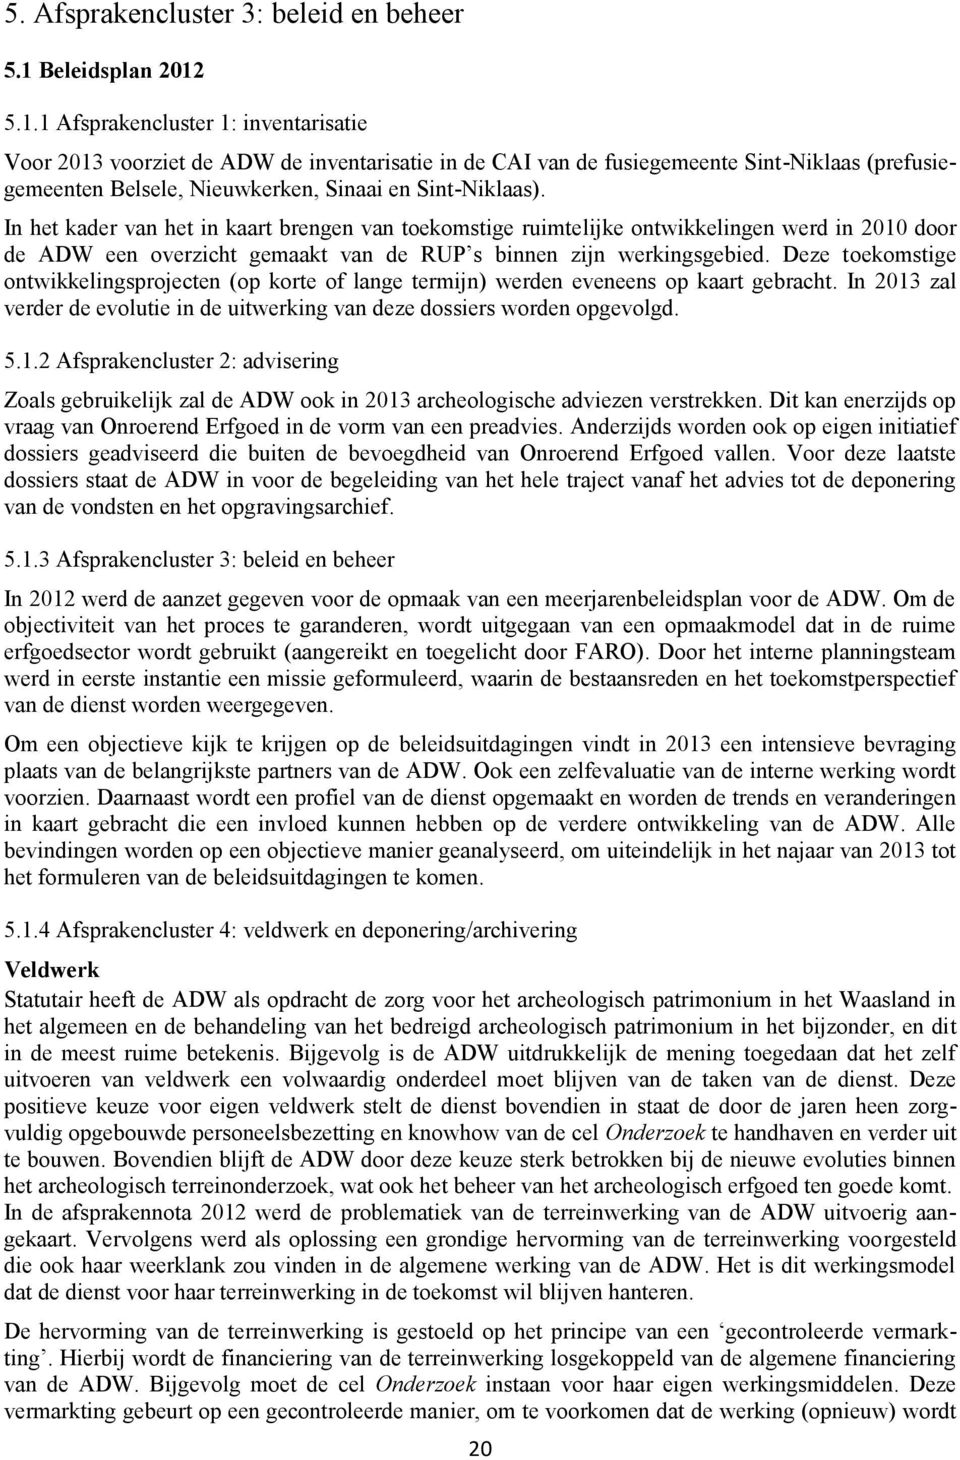 5.1.1 Afsprakencluster 1: inventarisatie Voor 2013 voorziet de ADW de inventarisatie in de CAI van de fusiegemeente Sint-Niklaas (prefusiegemeenten Belsele, Nieuwkerken, Sinaai en Sint-Niklaas).